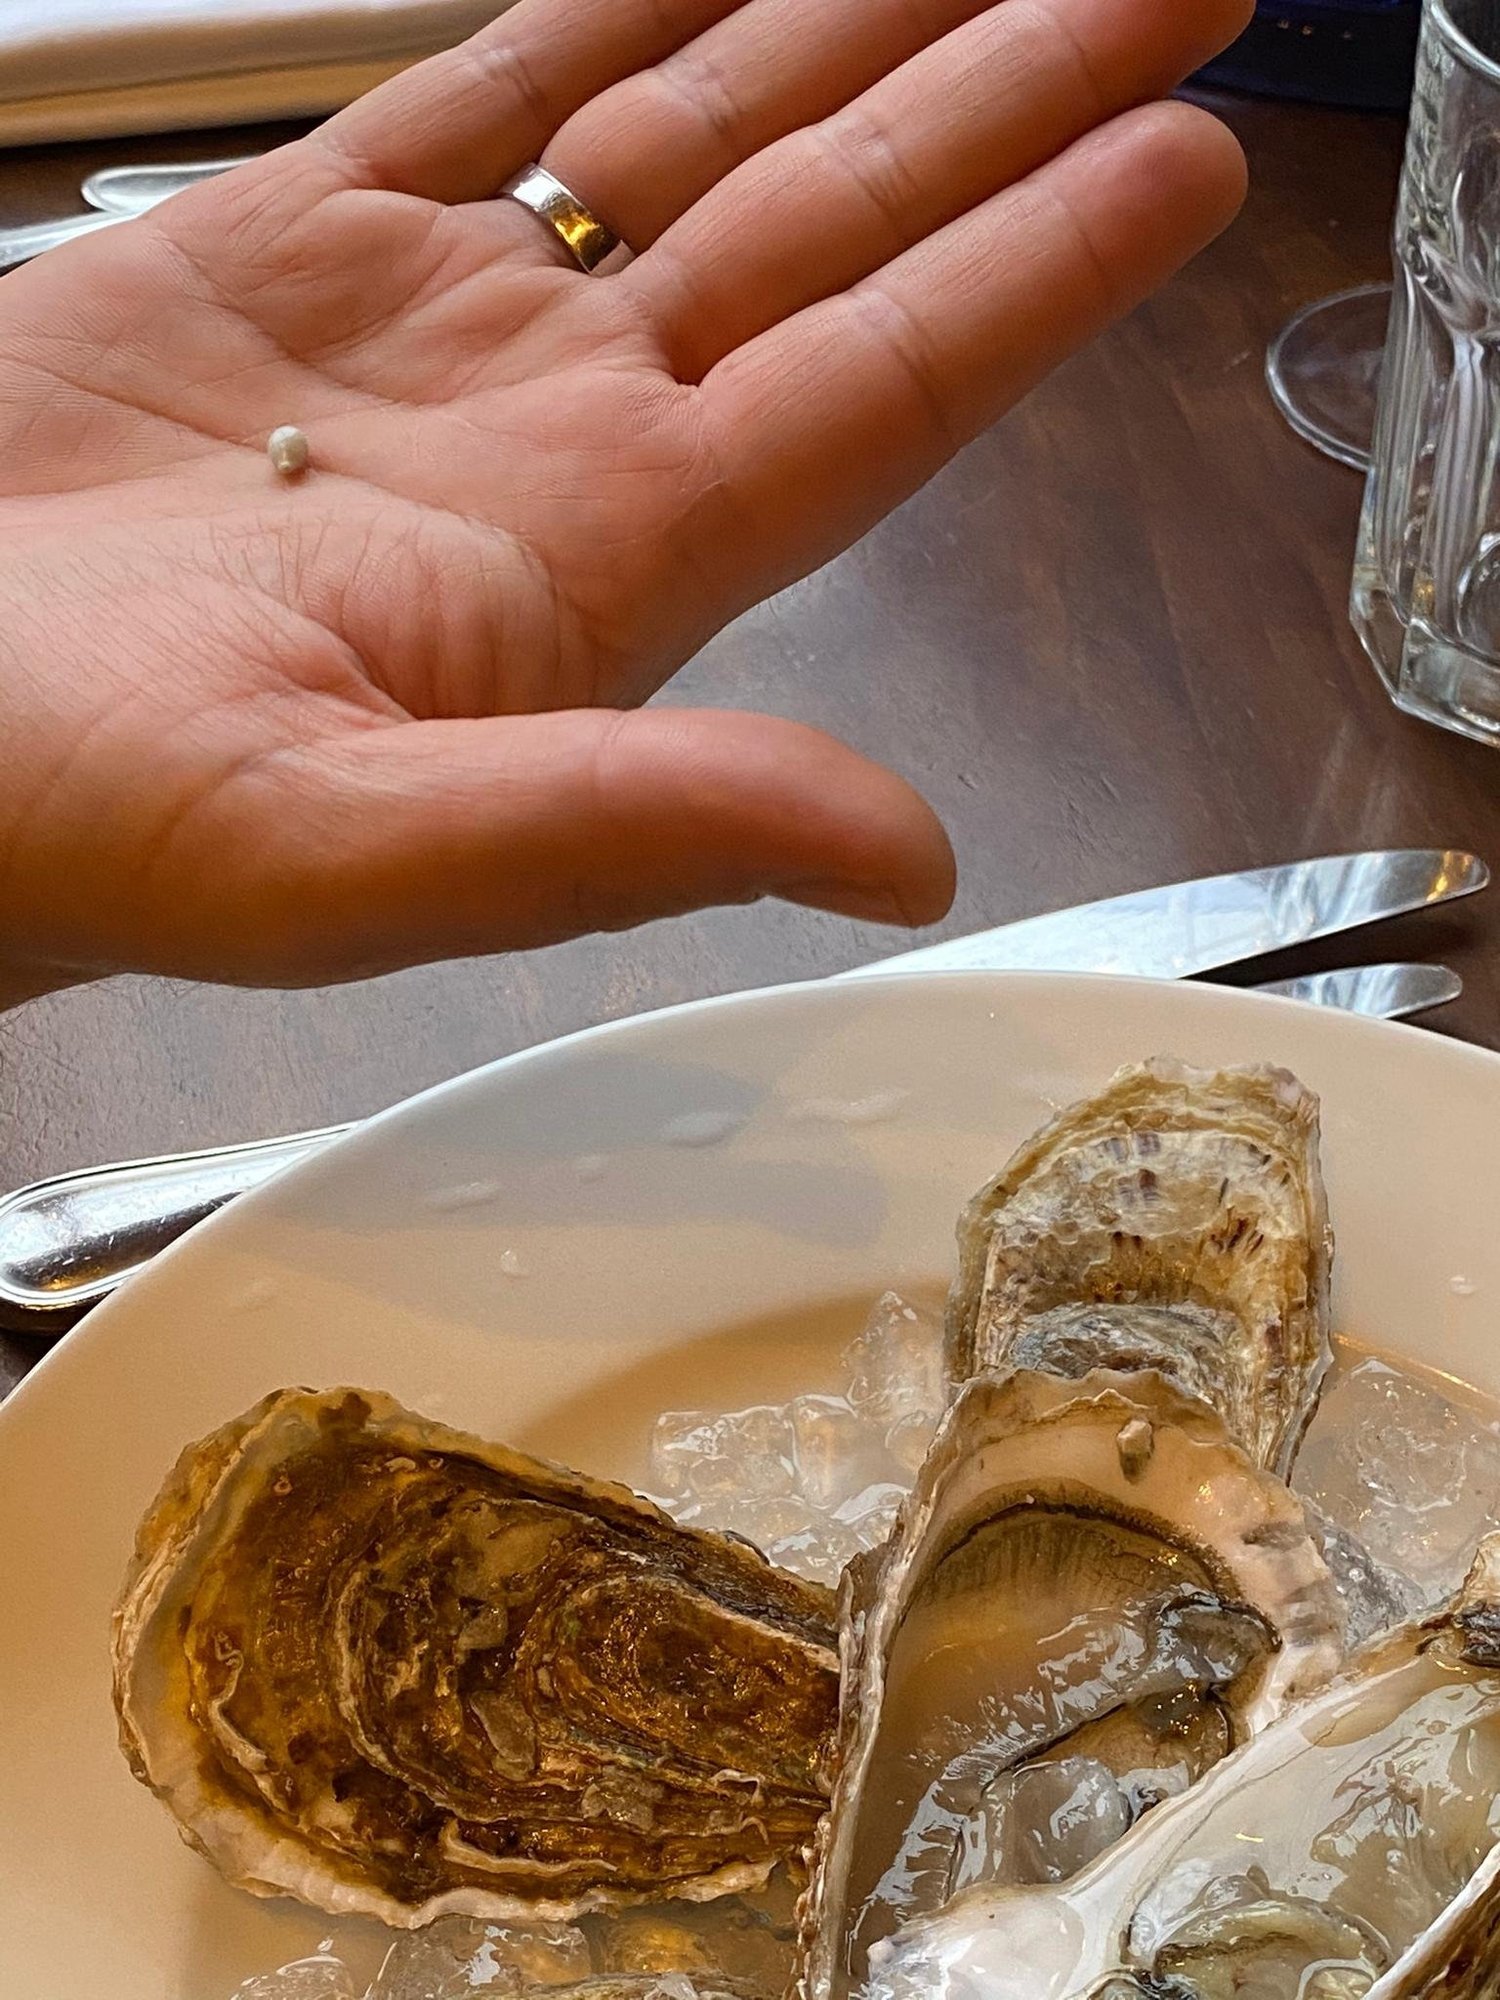 Un client de la Brasserie de l'hôtel de ville, à La Chaux-de-Fonds, a eu la surprise, en dégustant ses huîtres, de mordre dans une perle.